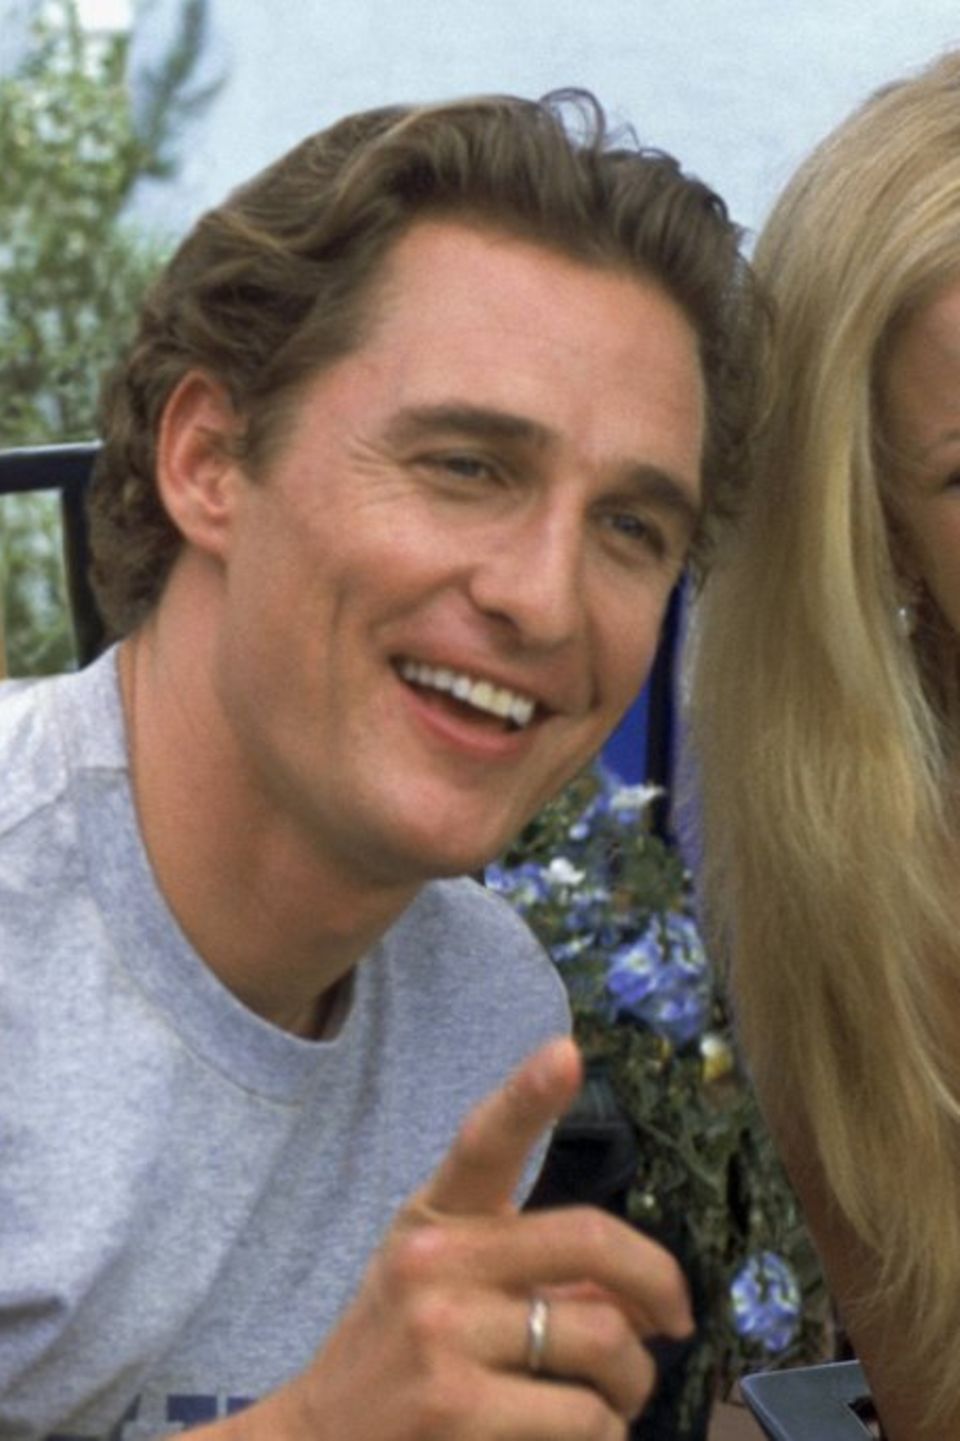 Matthew McConaughey als Ben und Kate Hudson als Andie in der Liebeskomödie "Wie werde ich ihn los - in 10 Tagen?".